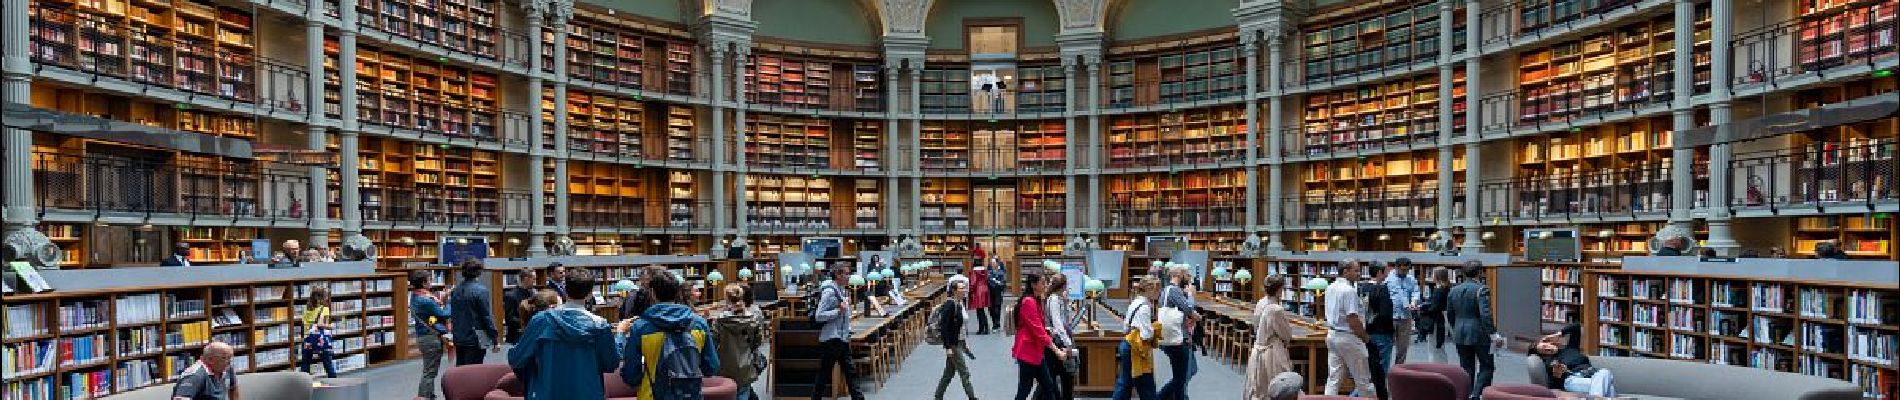 POI Parijs - Bibliothèque de l'Institut national d'histoire de l'art (BNF) - Photo